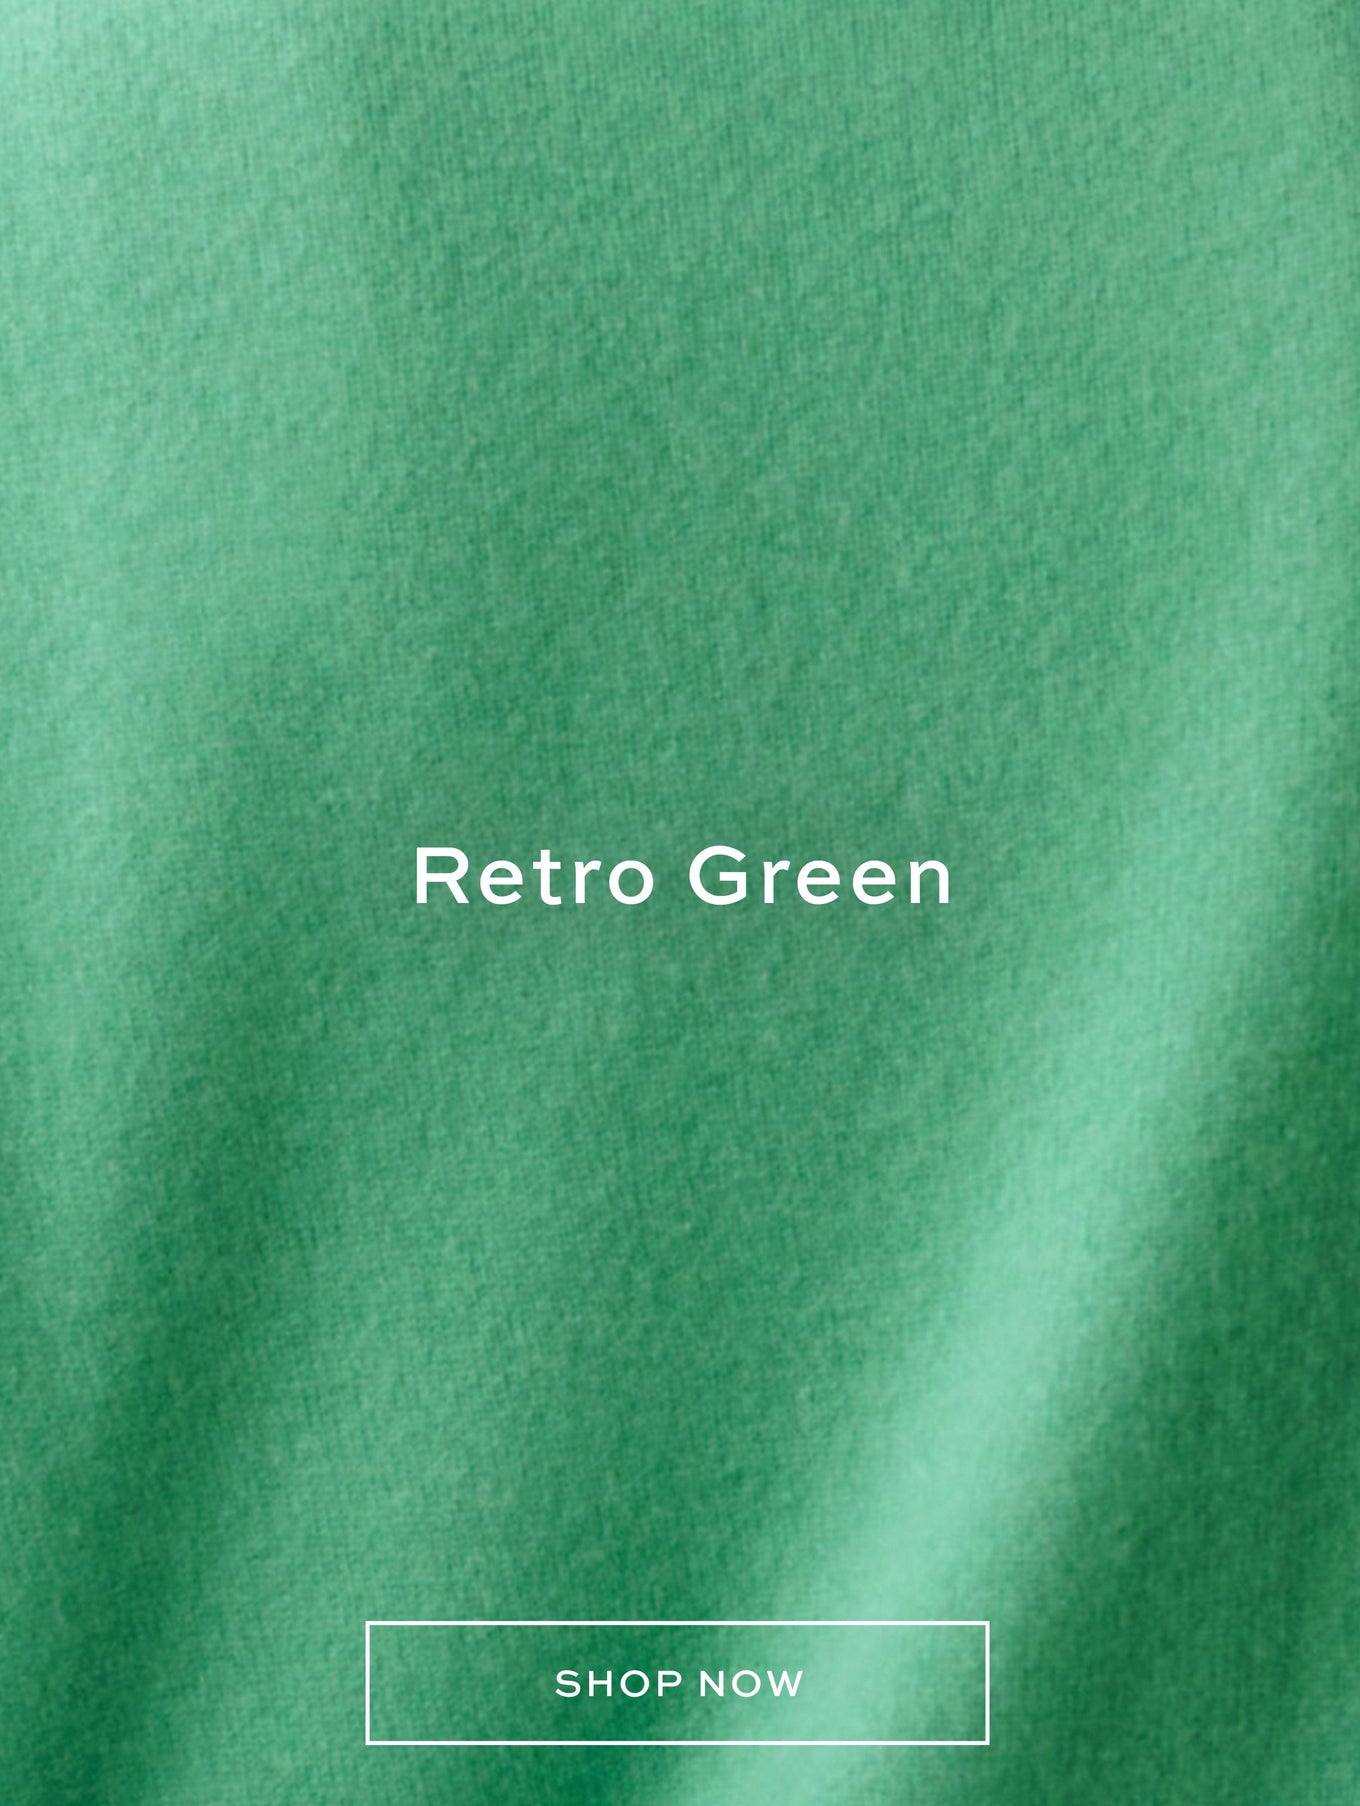 02.08 Single In-Grid - Retro Green